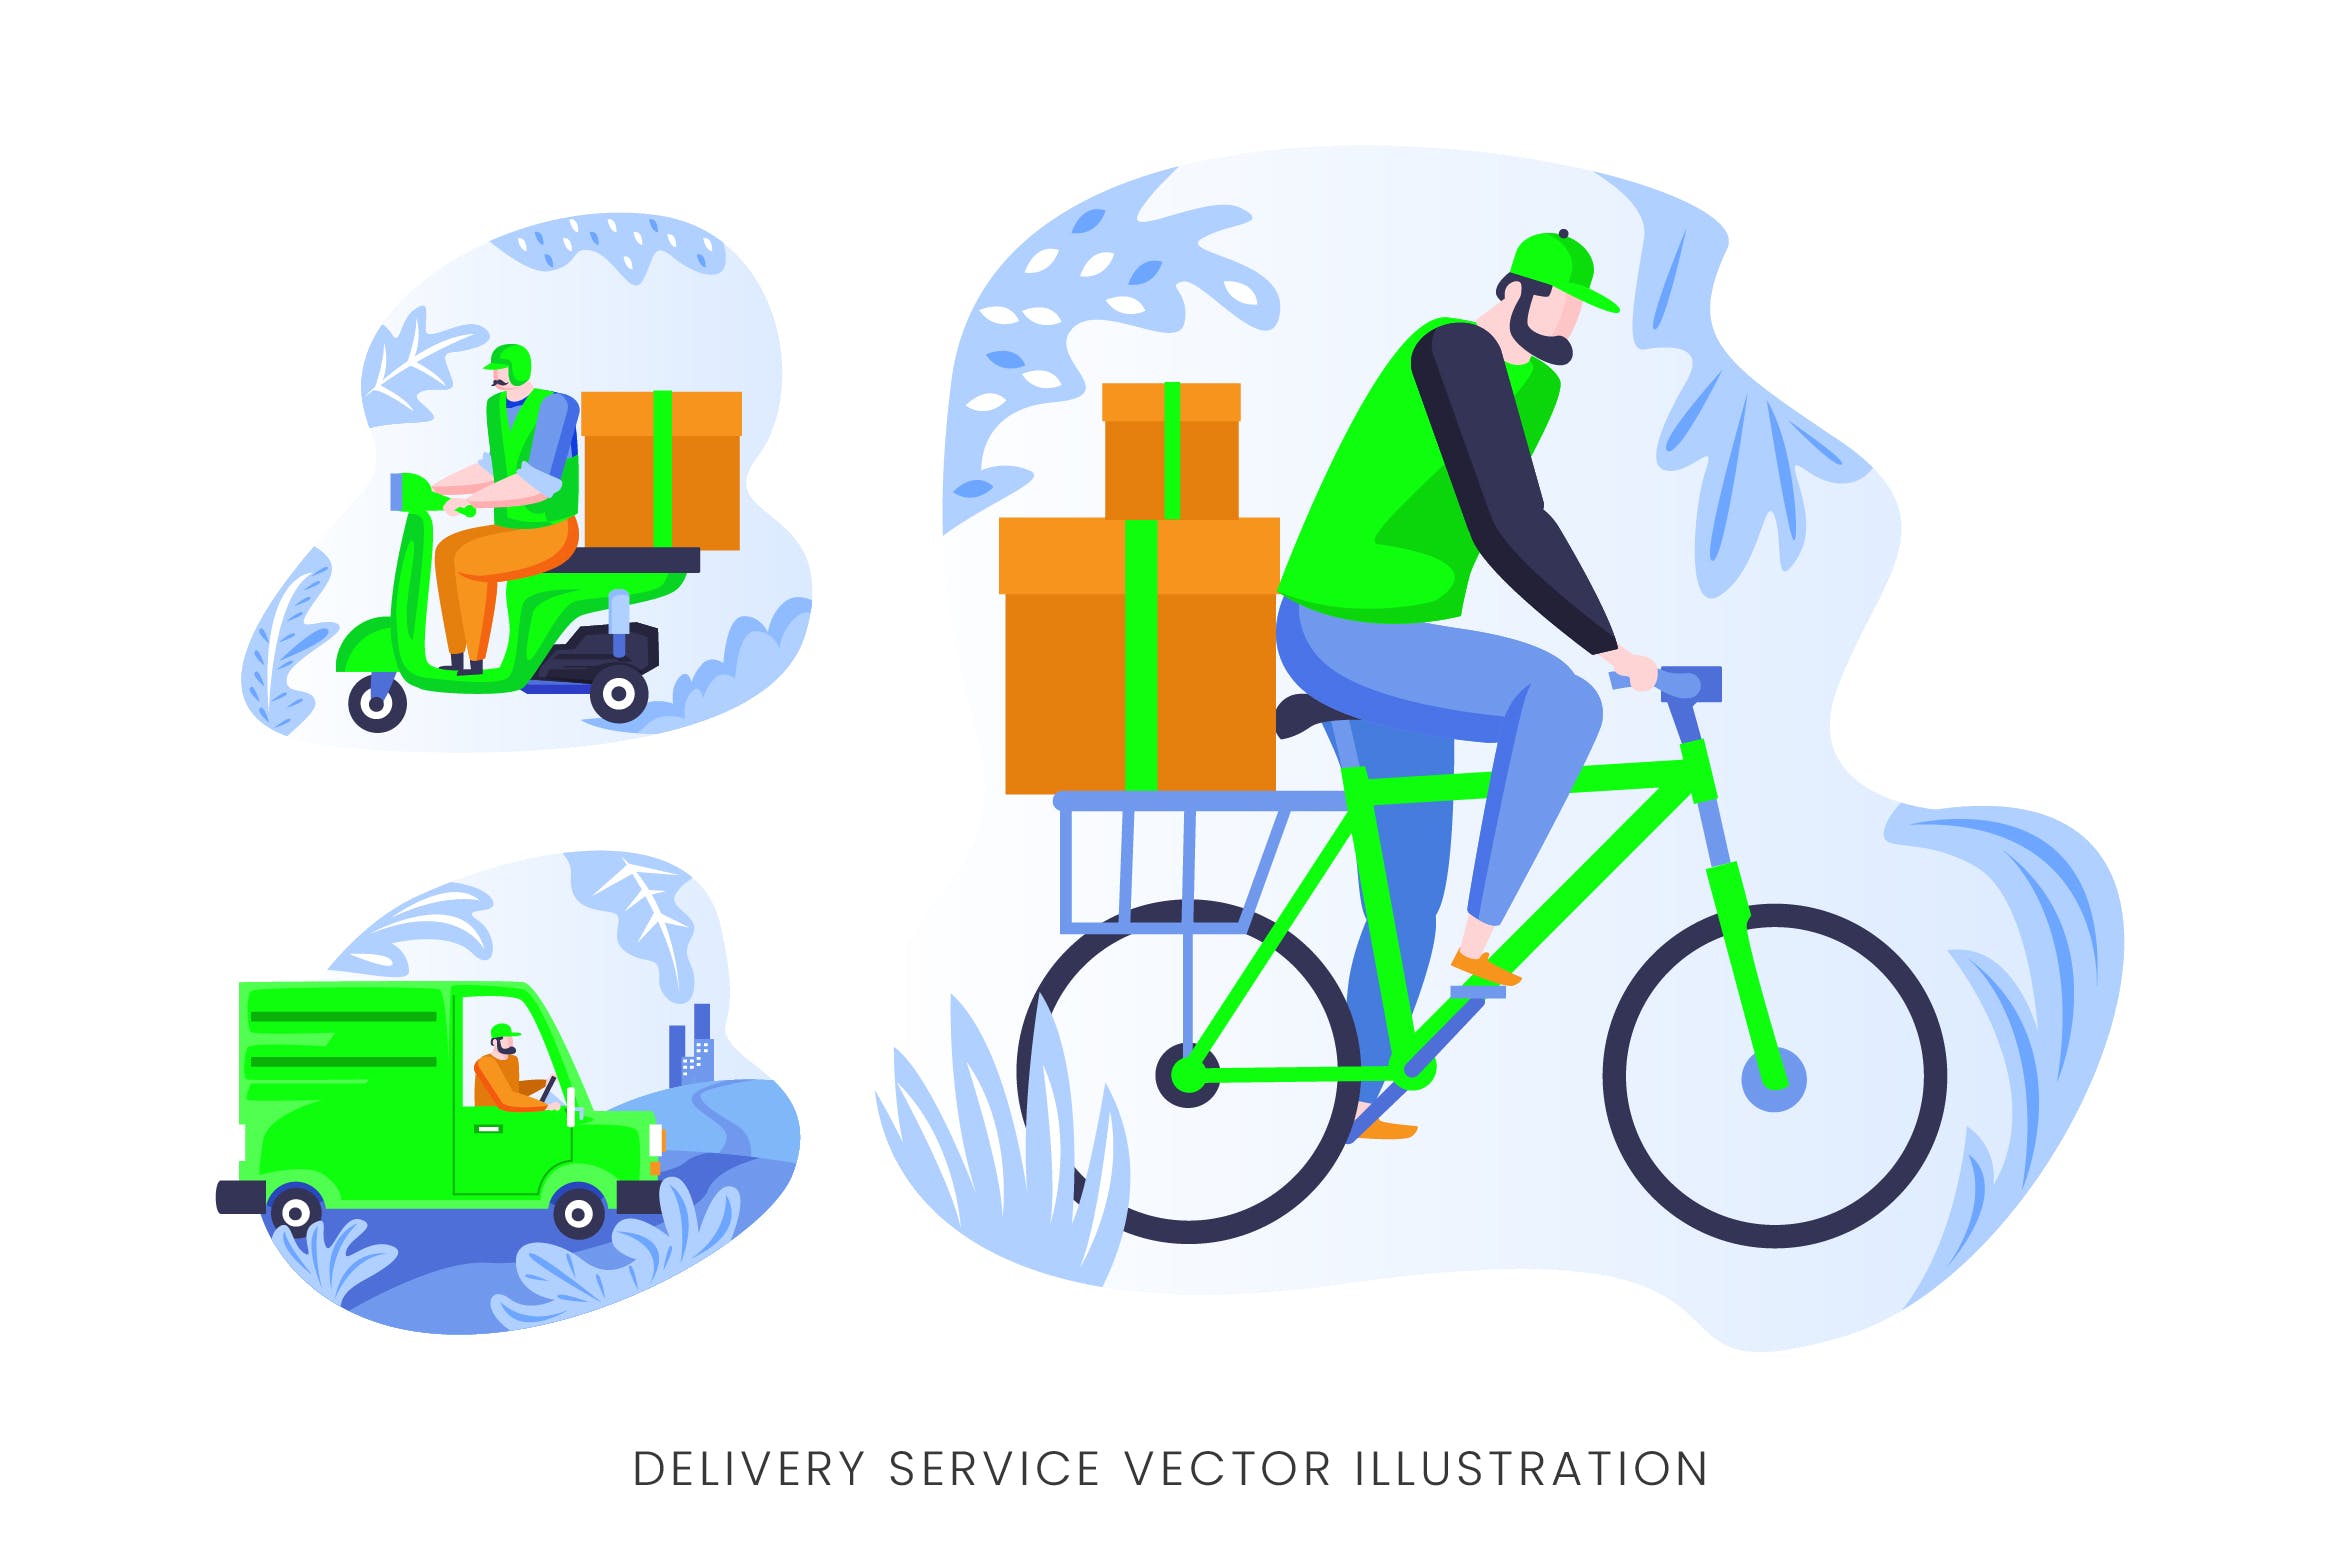 快递员送货员人物形象素材中国精选手绘插画矢量素材 Delivery Services Vector Character Set插图